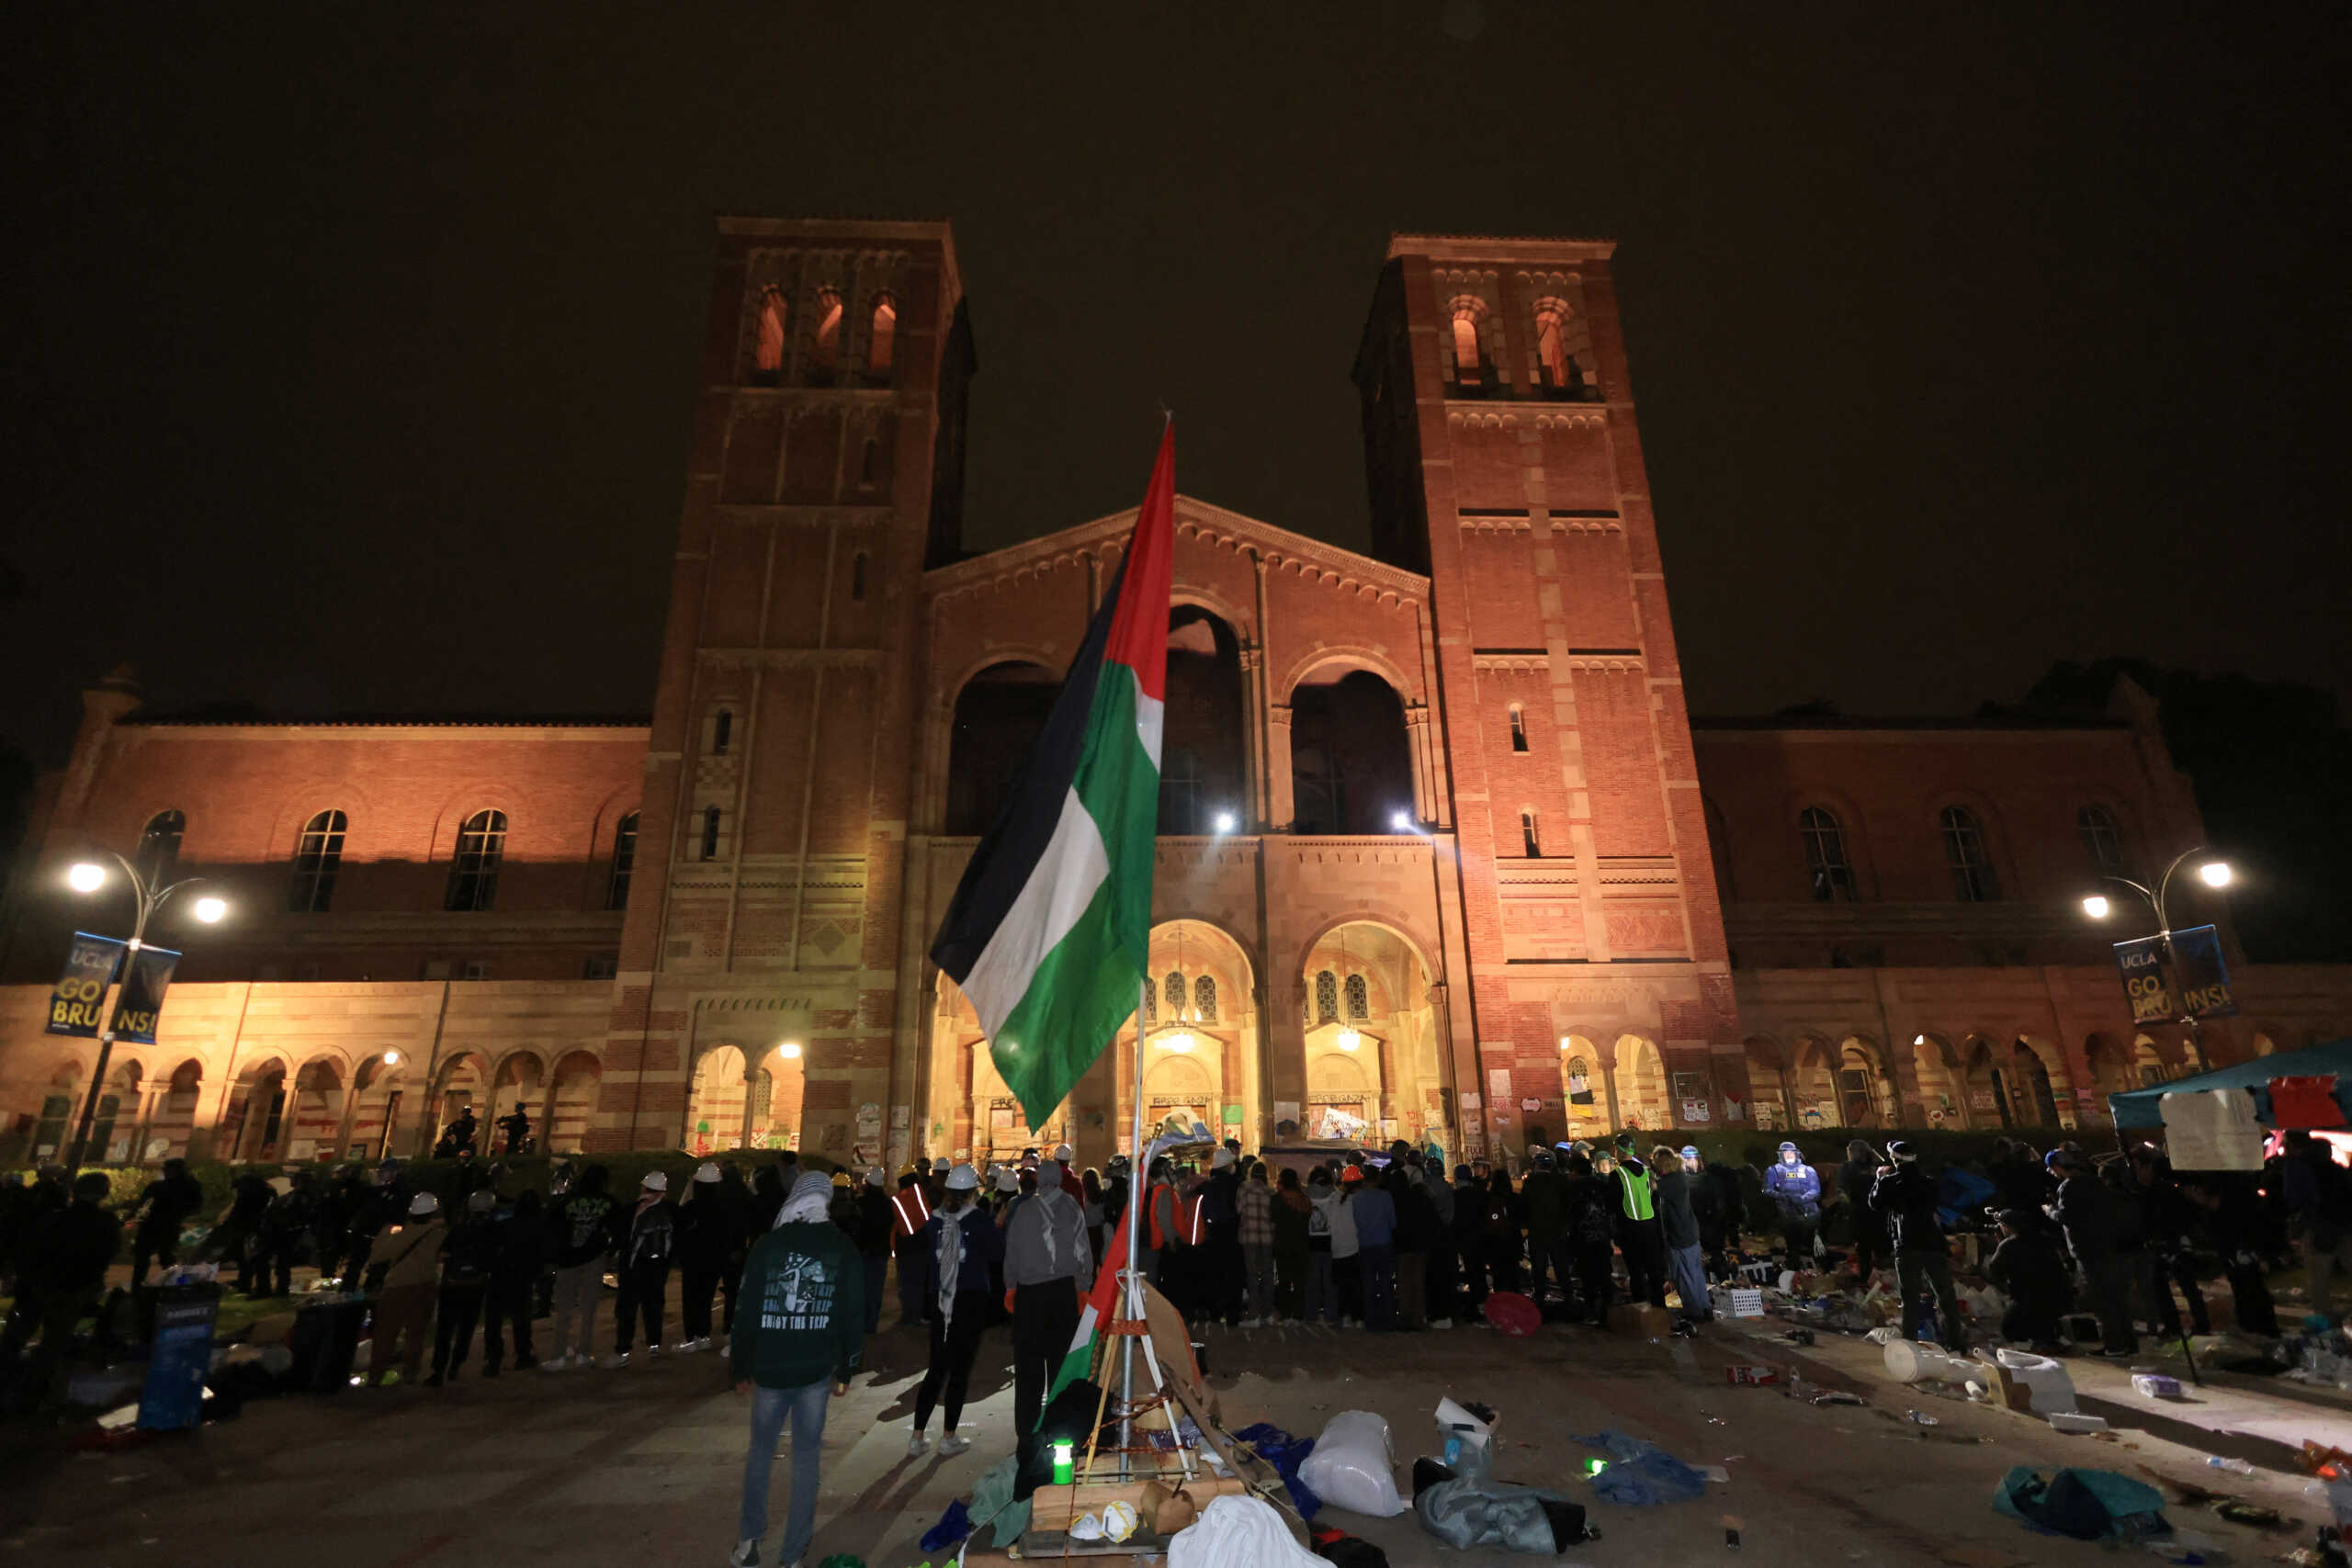 ΗΠΑ: Το πανεπιστήμιο Κολούμπια ακύρωσε την μεγάλη τελετή αποφοίτησης λόγω των διαδηλώσεων υπέρ της Γάζας